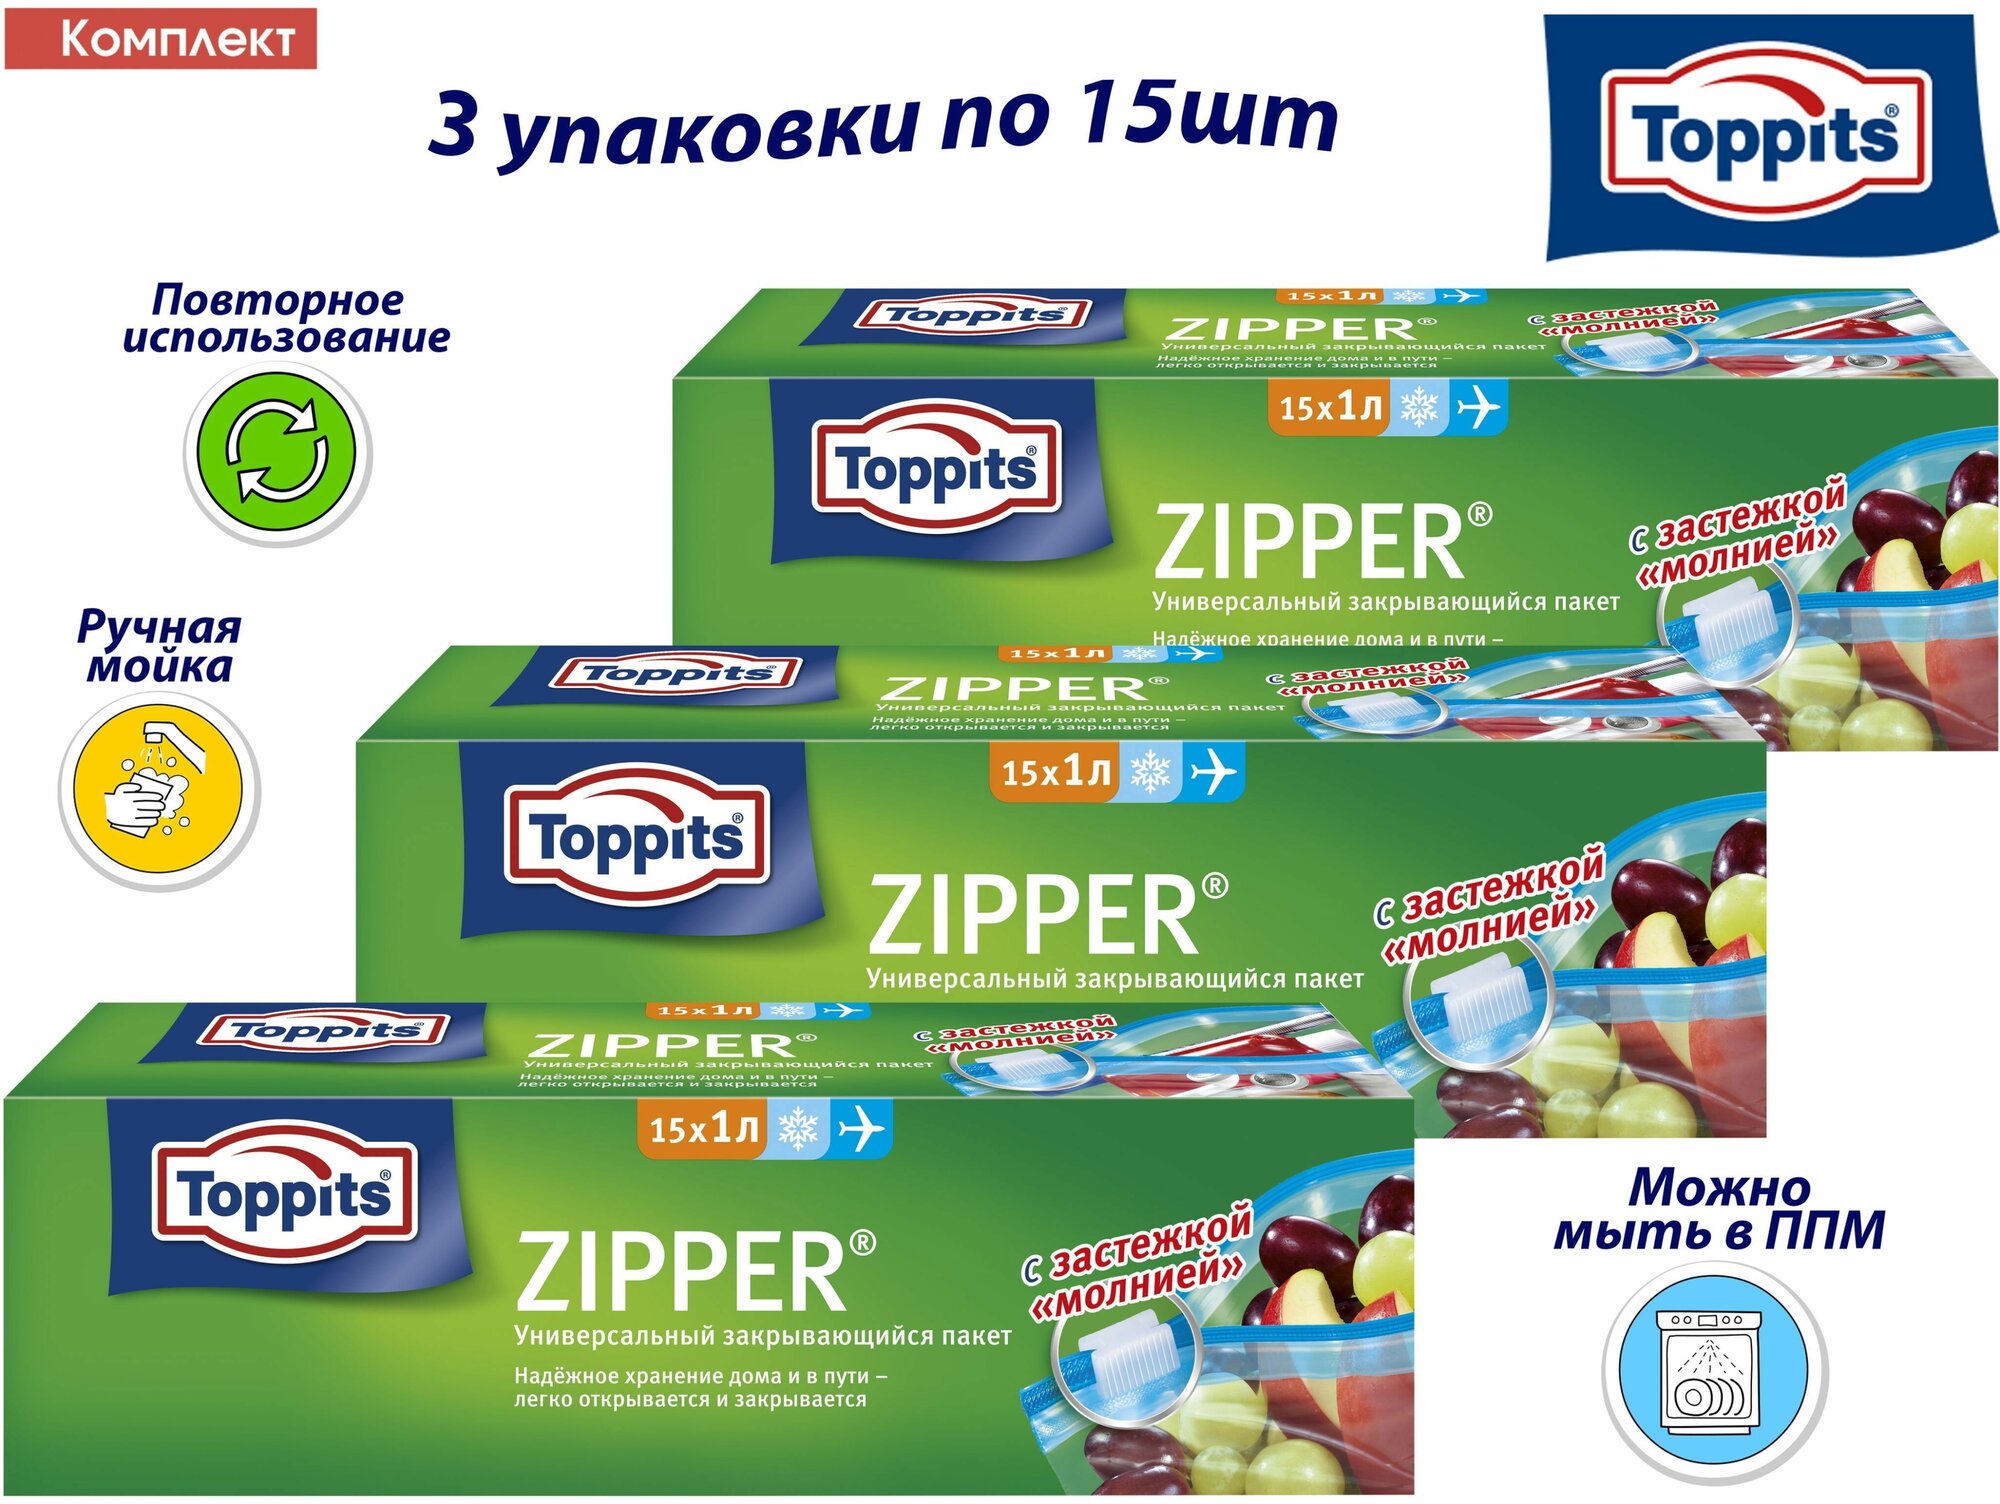 Комплект: TOPPITS ZIPPER 3 упаковки по 15шт по 1л. Универсальные закрывающиеся Пакеты д/хранения, транспортировки и замораживания